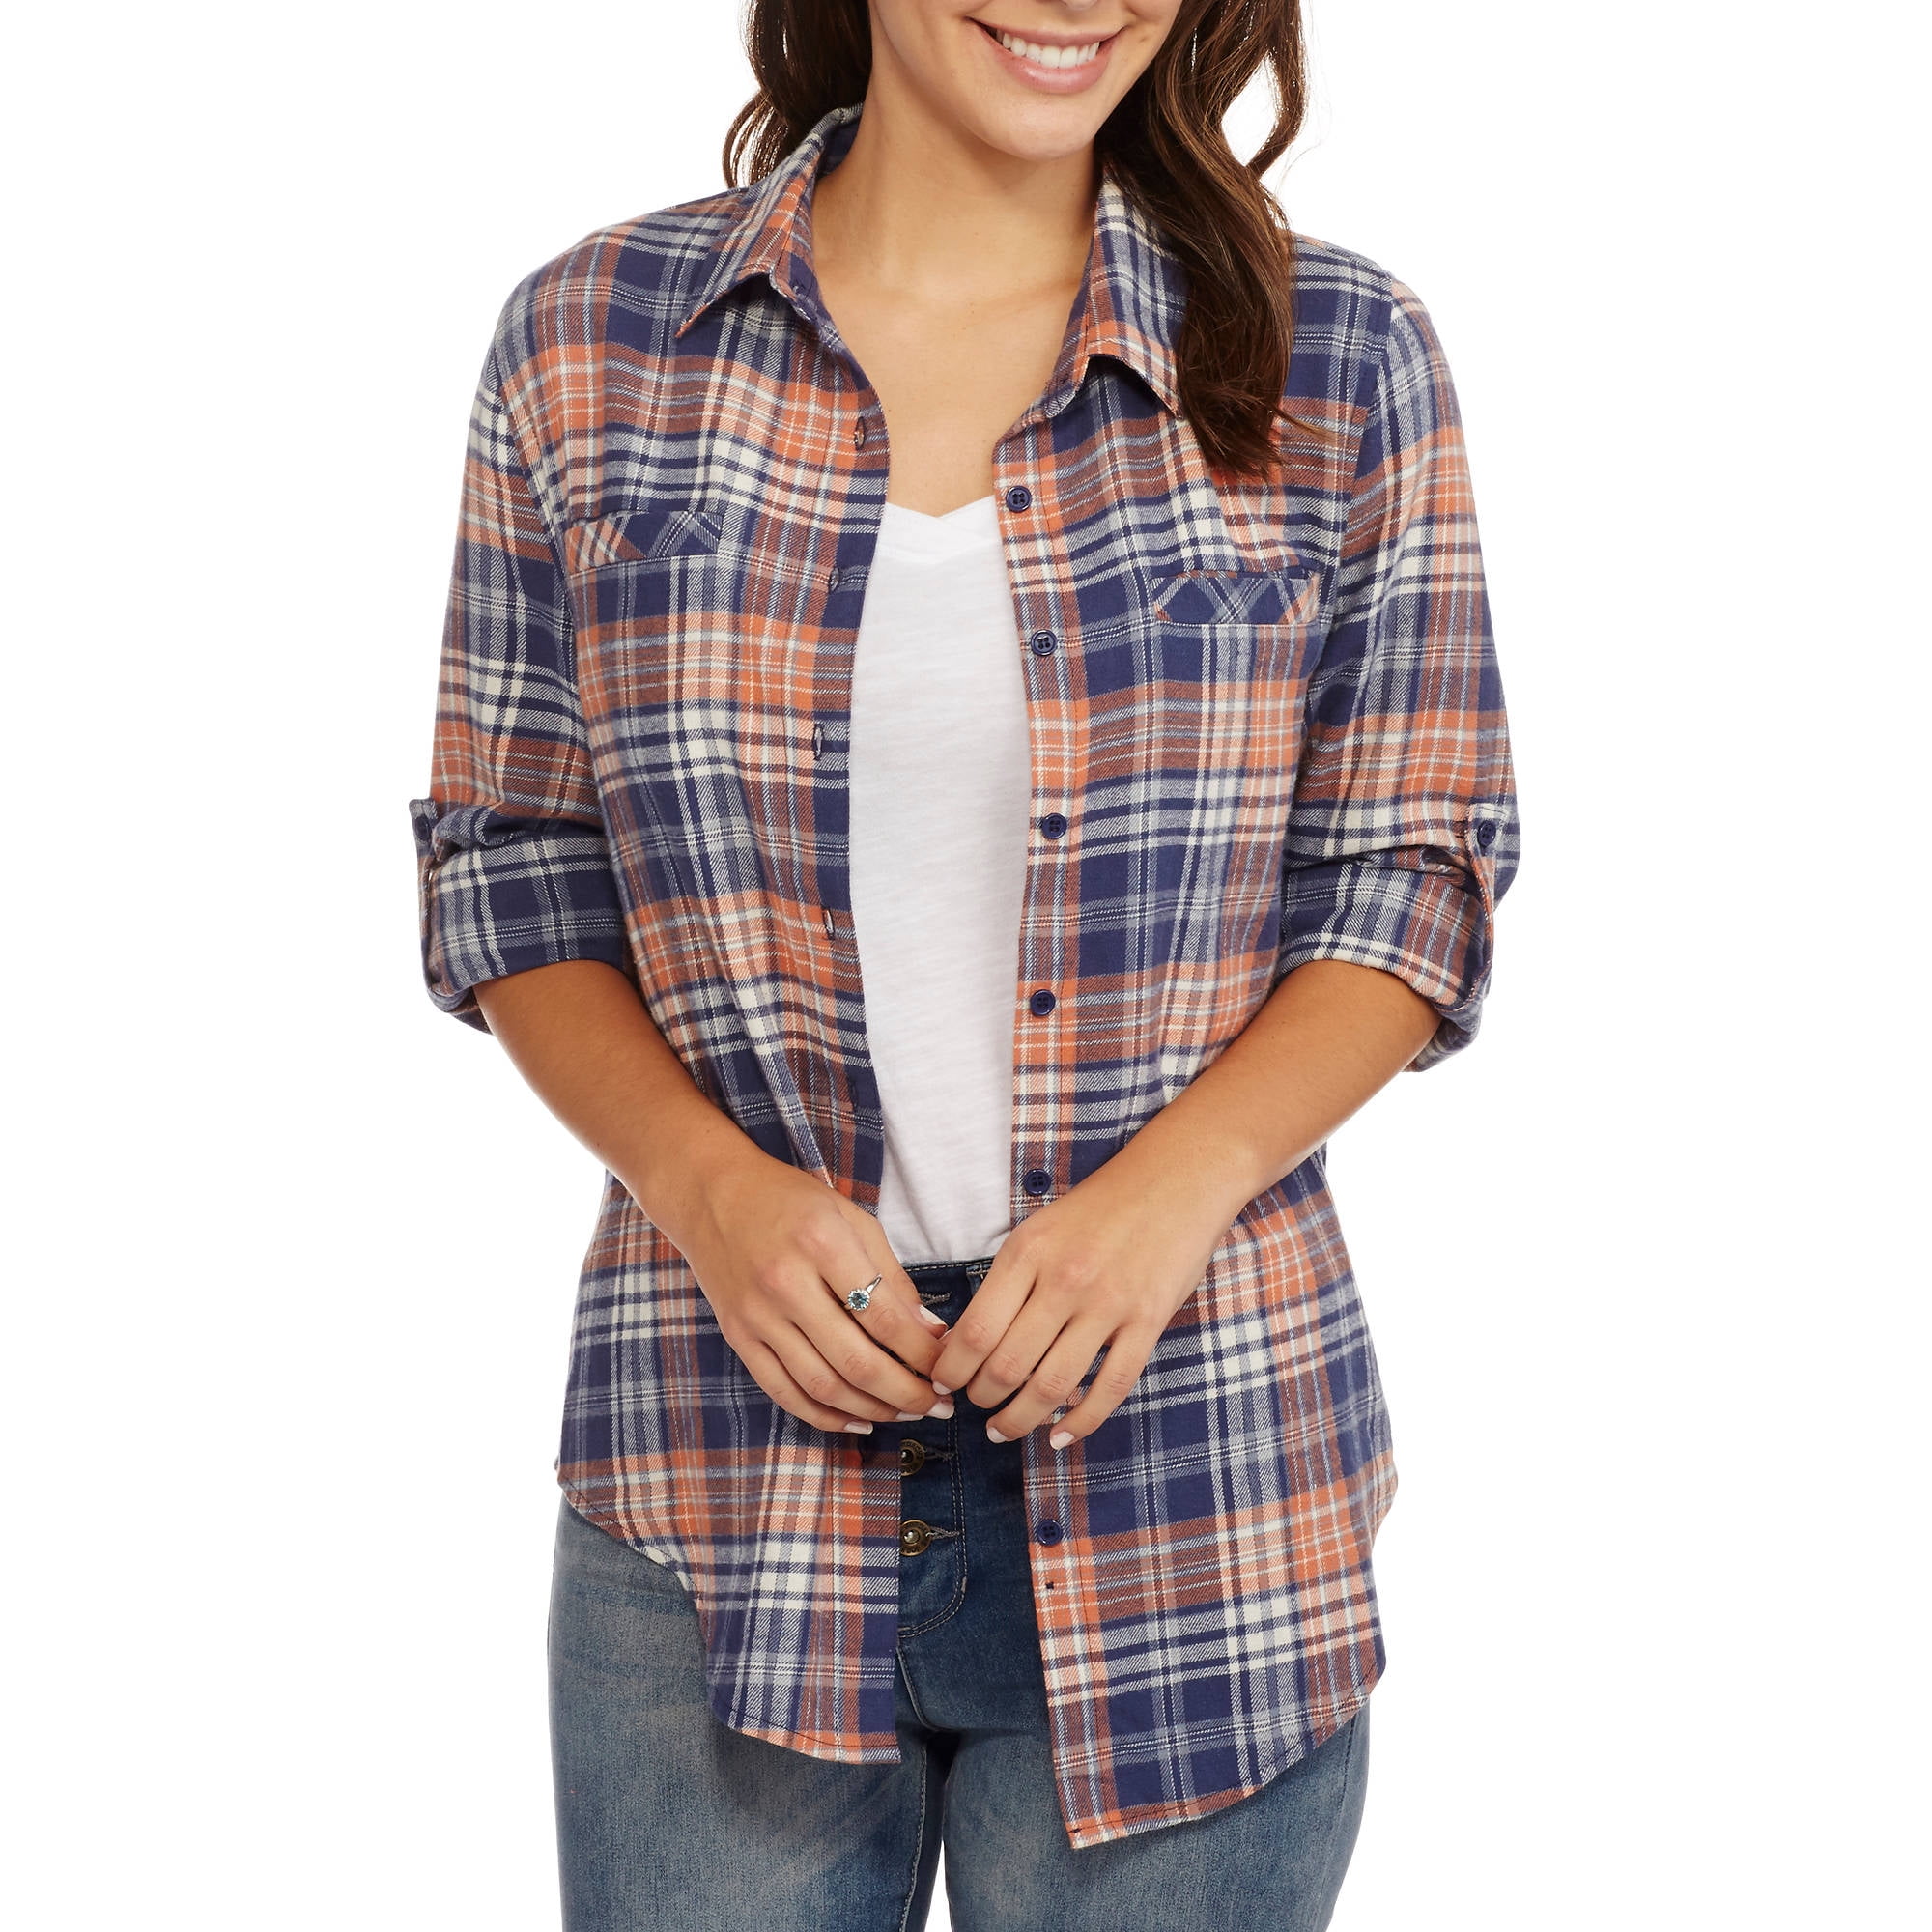 Brooke Leigh - Women's Lightweight Flannel Shirt with Pockets - Walmart ...